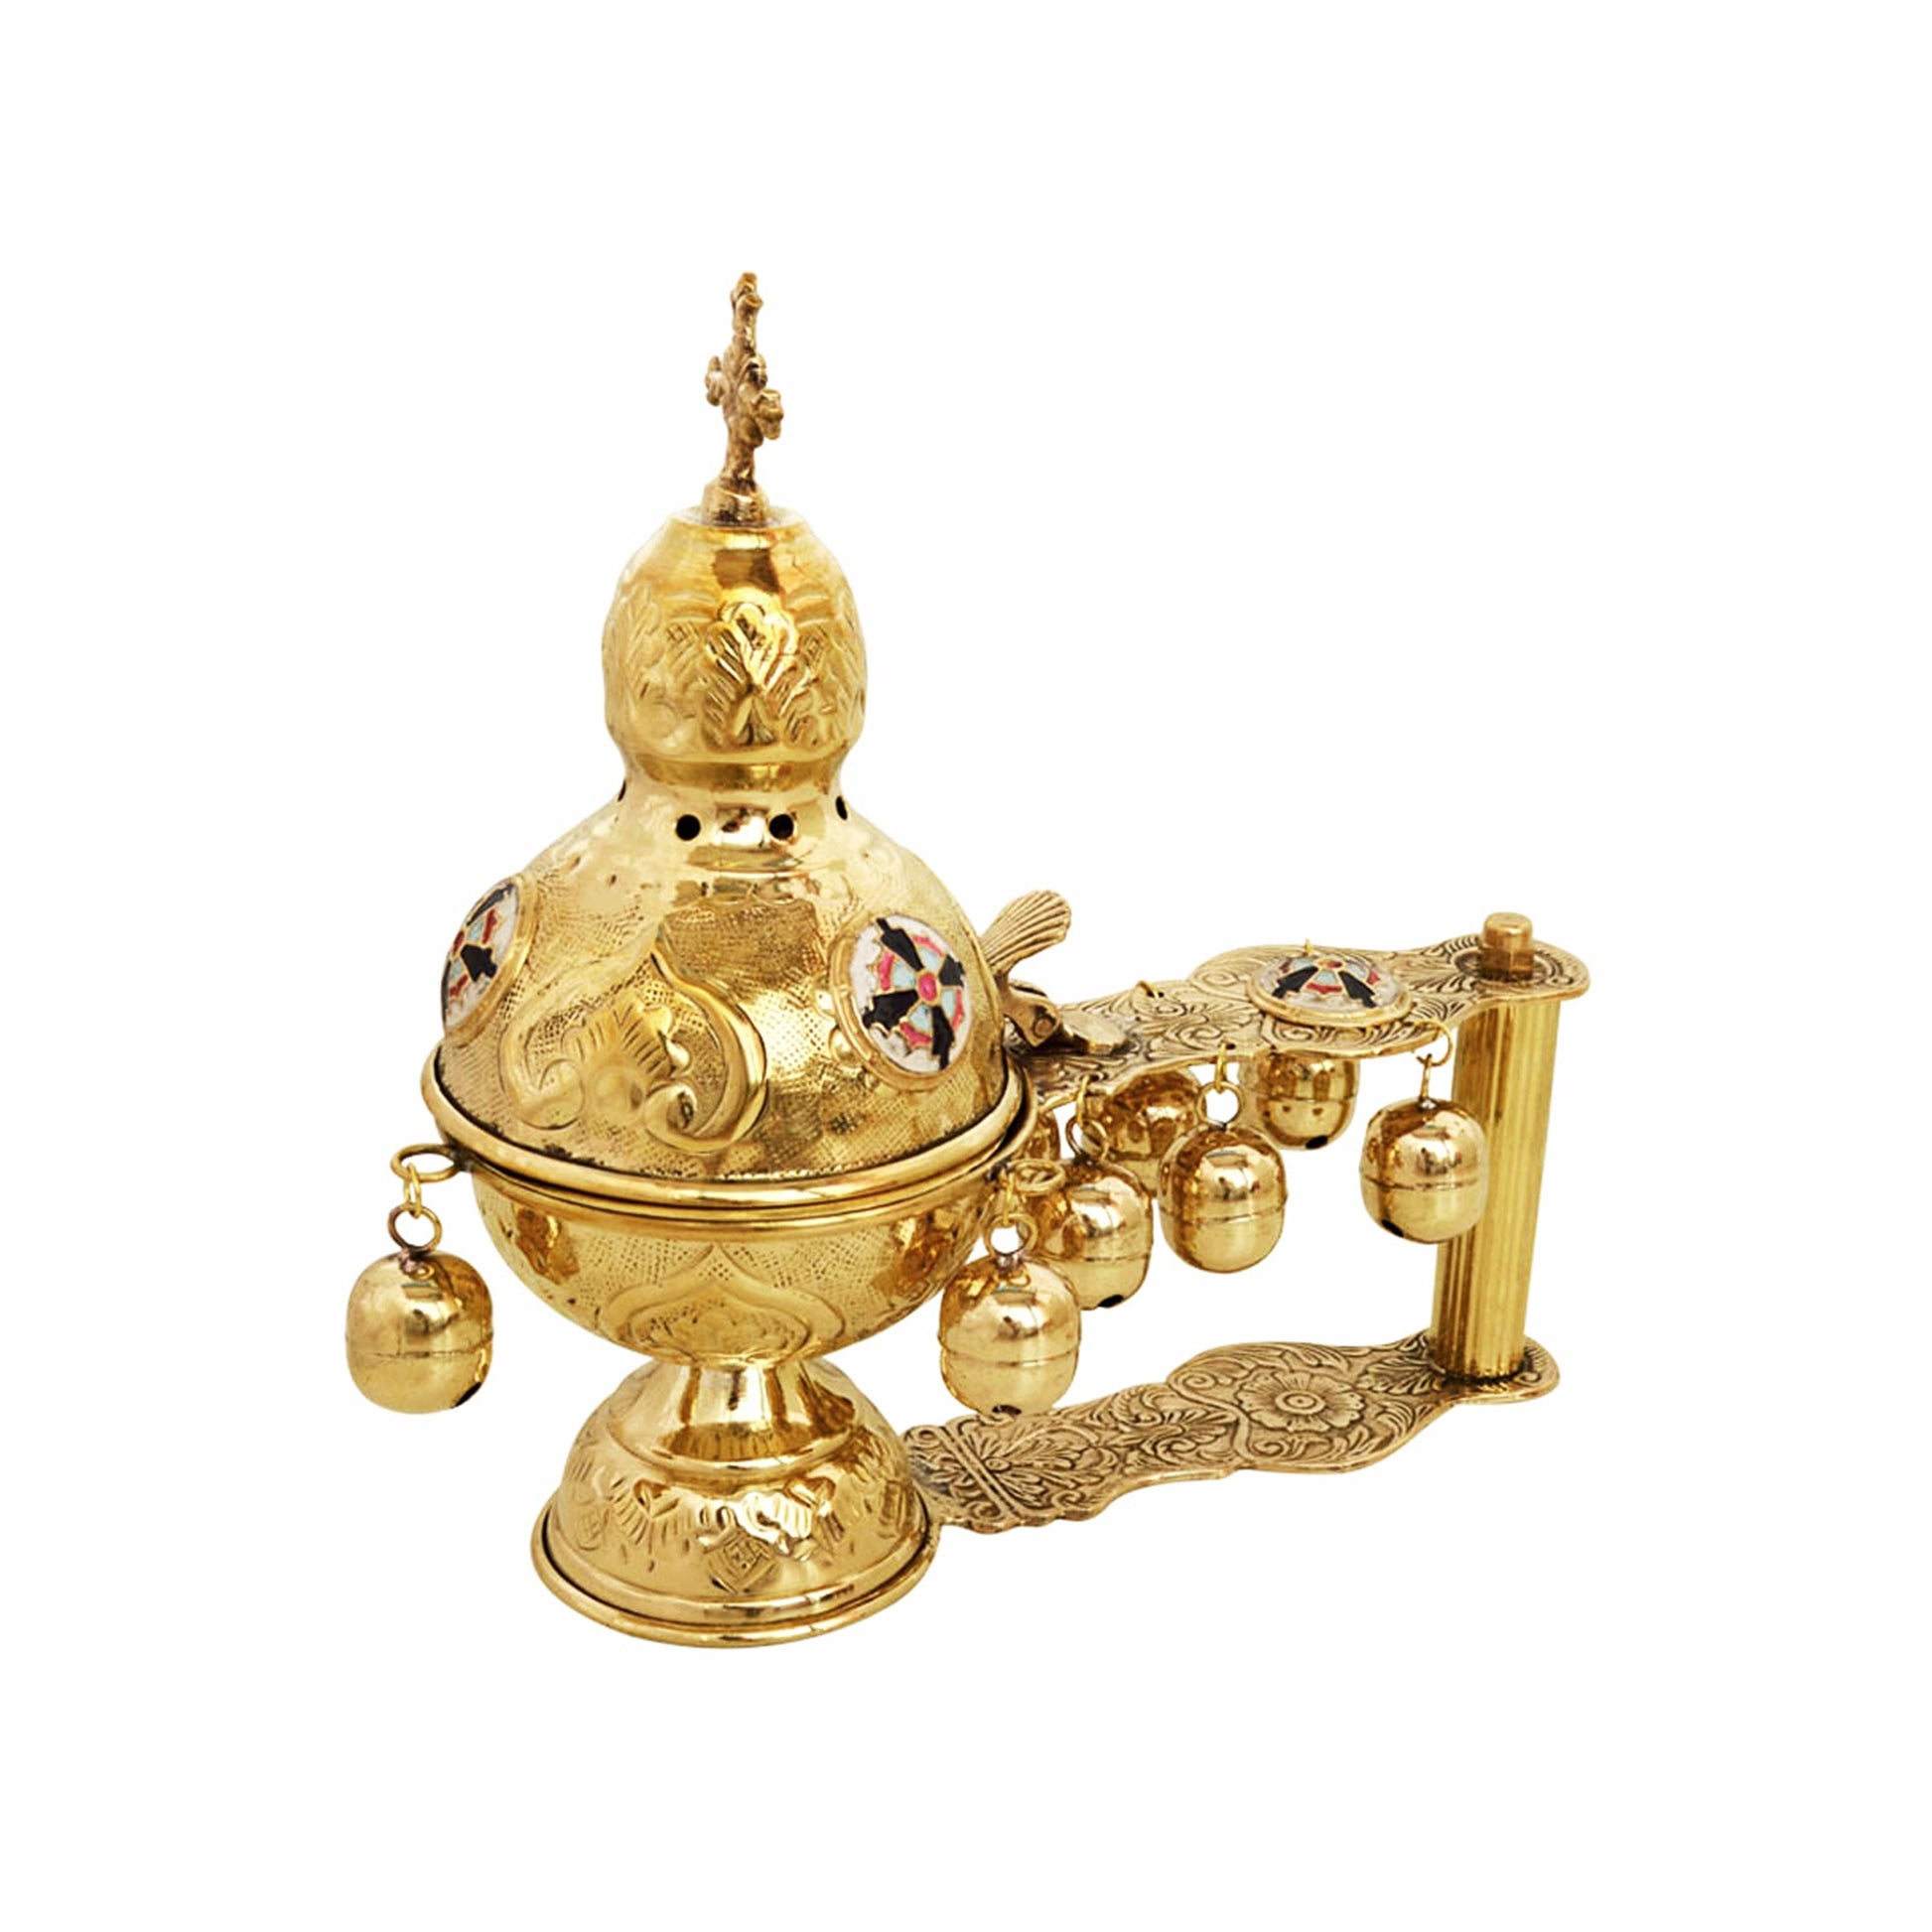 Christian Hand Gold plated Brass Resin Incense Burner Kantzia Greek Orthodox Thurible Incense holder Byzantine Censer Perfume burner gift TheHolyArt